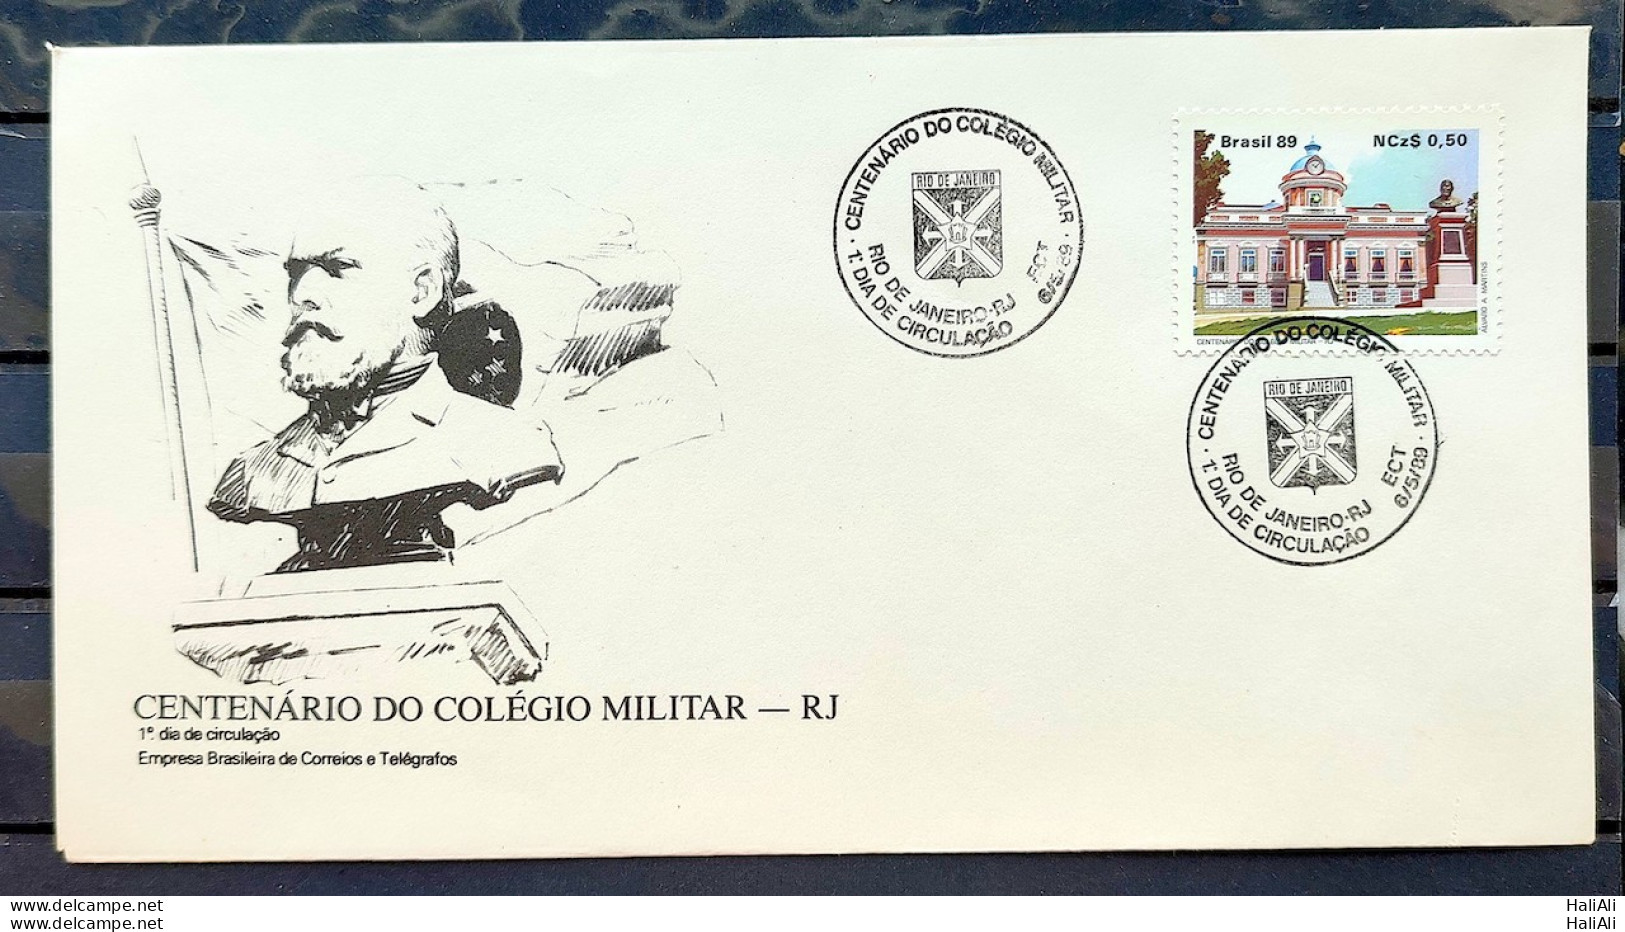 Brazil Envelope FDC 468 1989 MILITARY COLLEGE EDUCATION CBC RJ 02 - Oblitérés